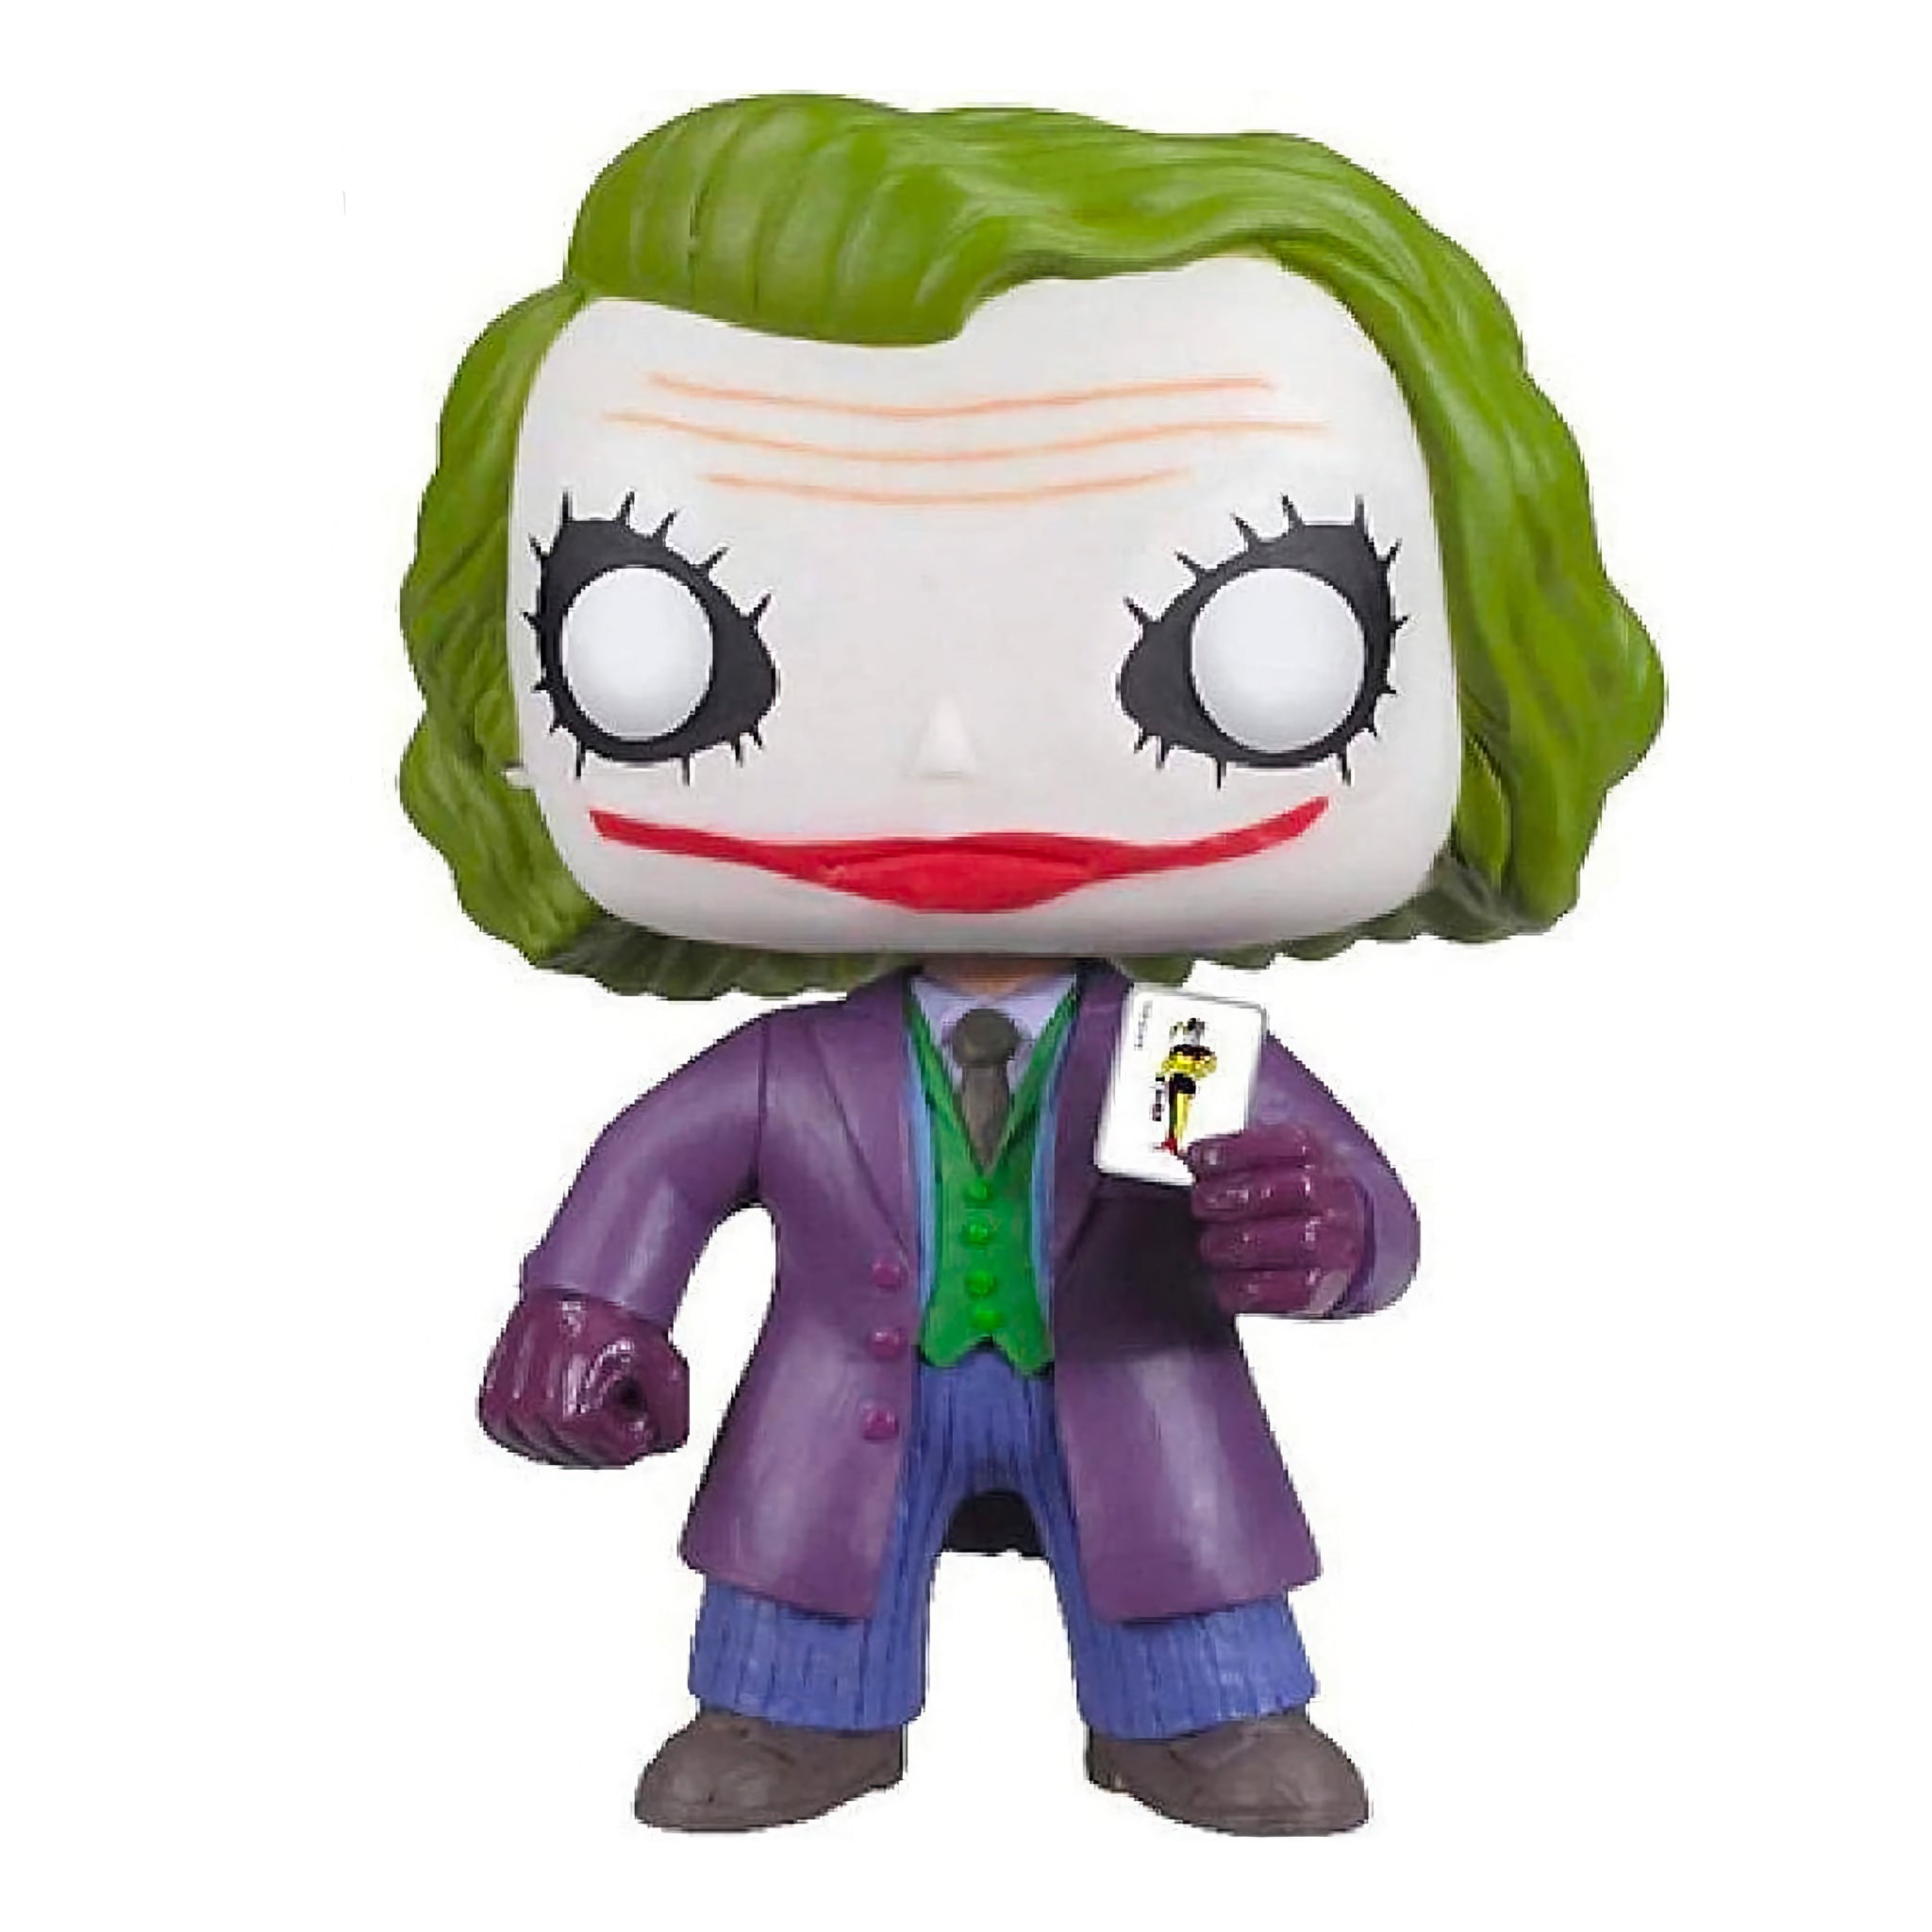 The Joker Funko Pop!